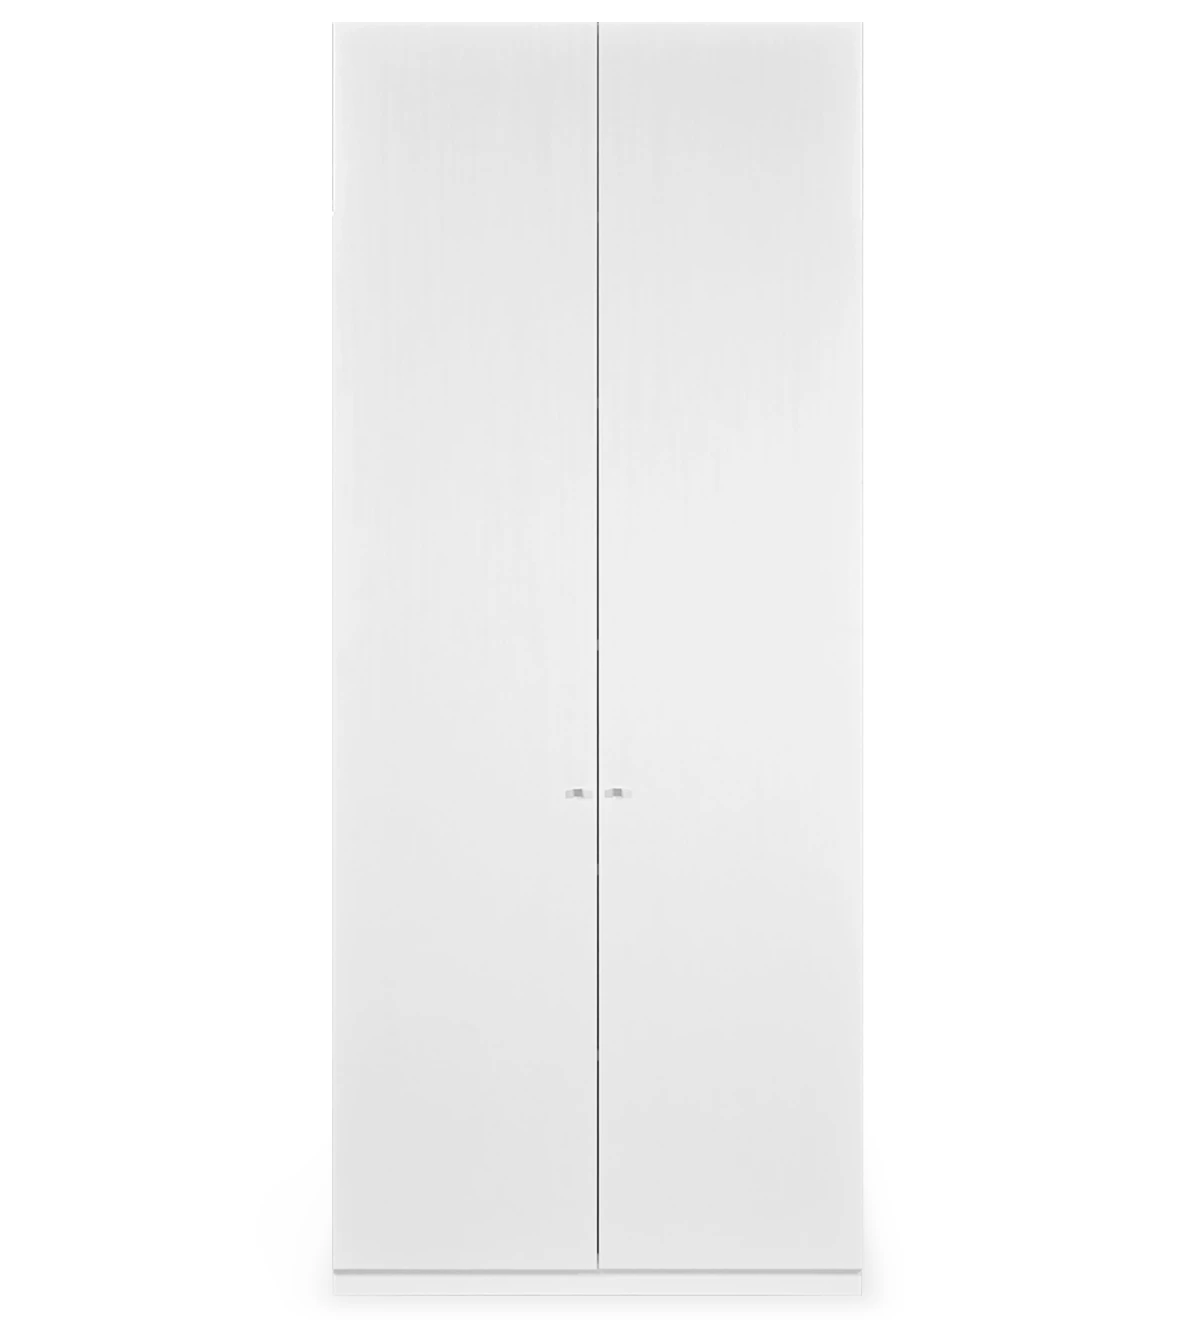 Móvel estante alto em carvalho branco, com 2 porta e prateleiras amovíveis.